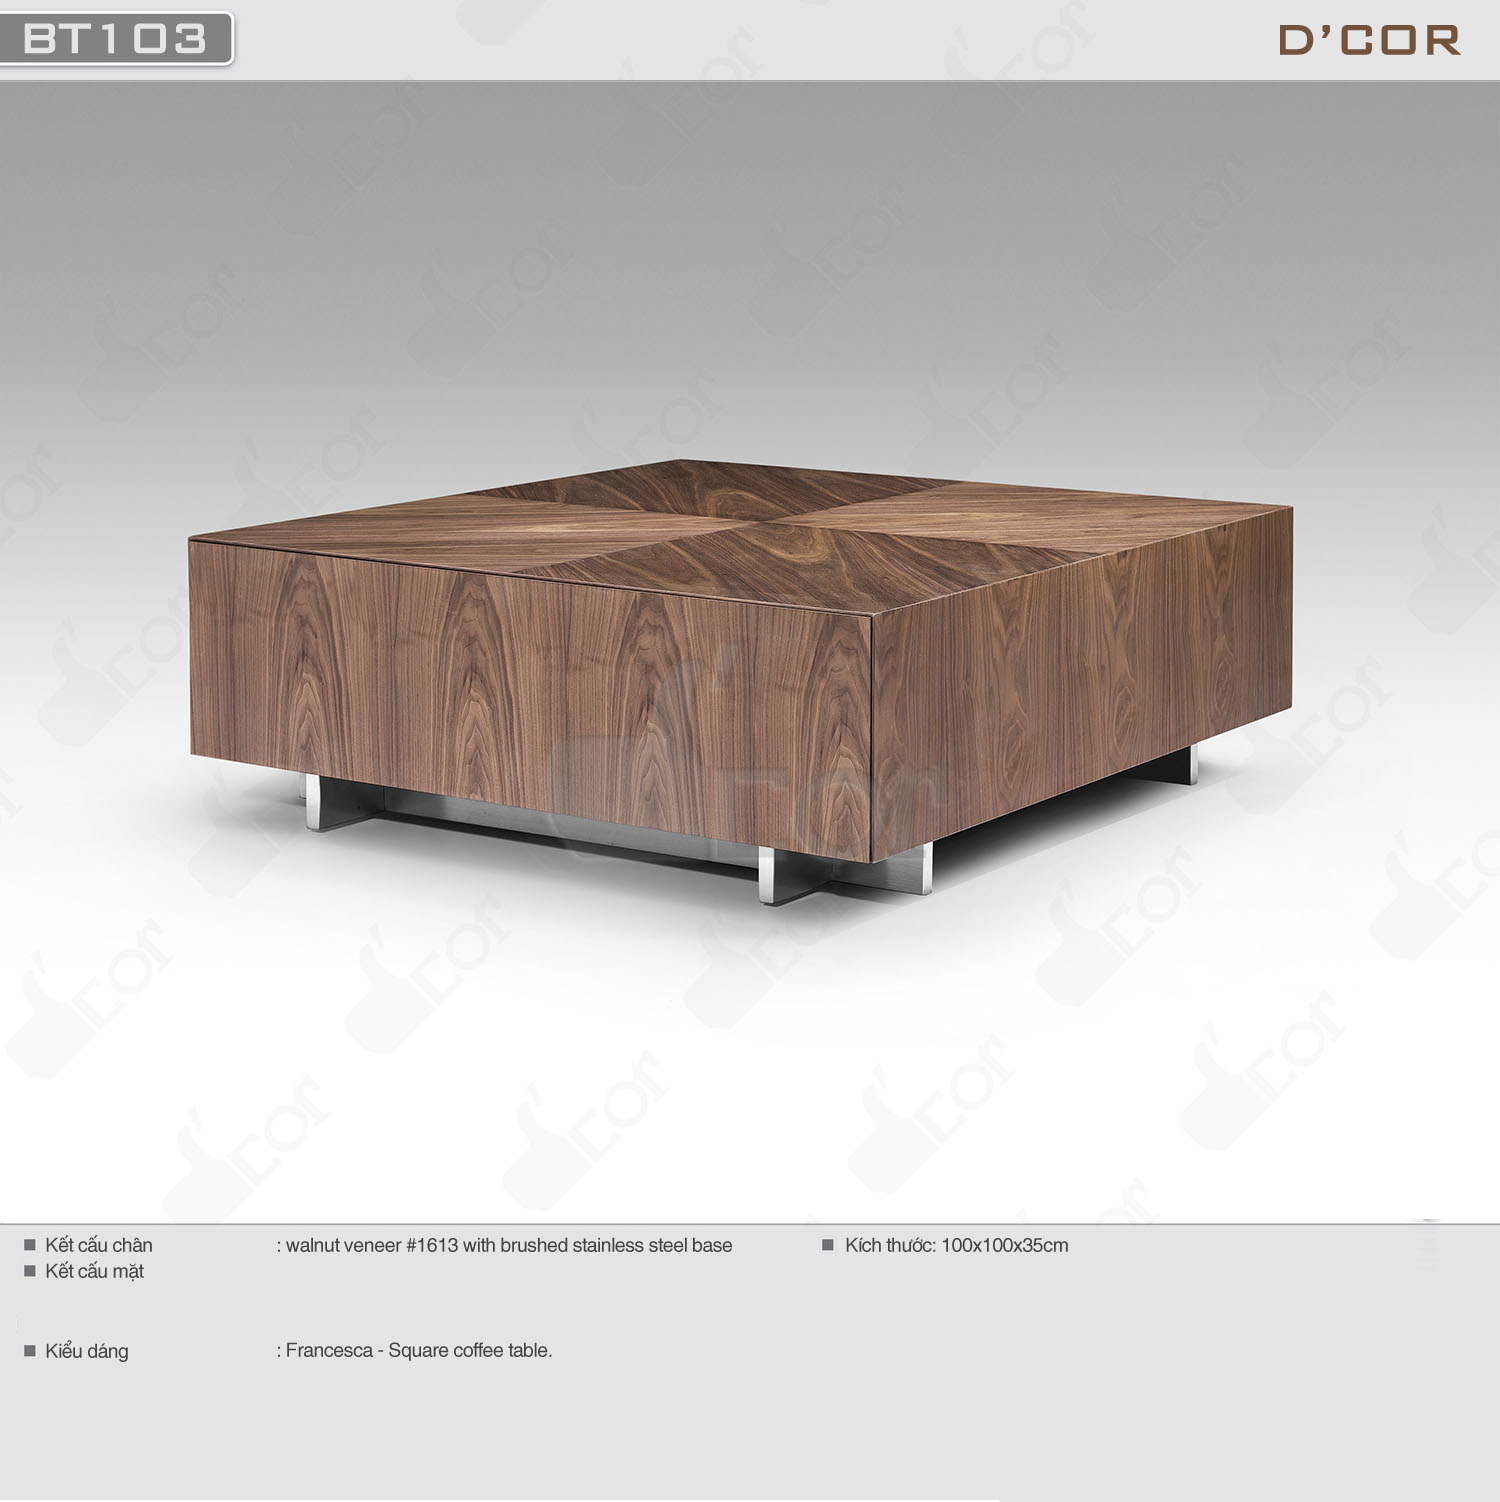 Mẫu bàn trà hình vuông màu gỗ óc chó kích thước 100x100x35cm